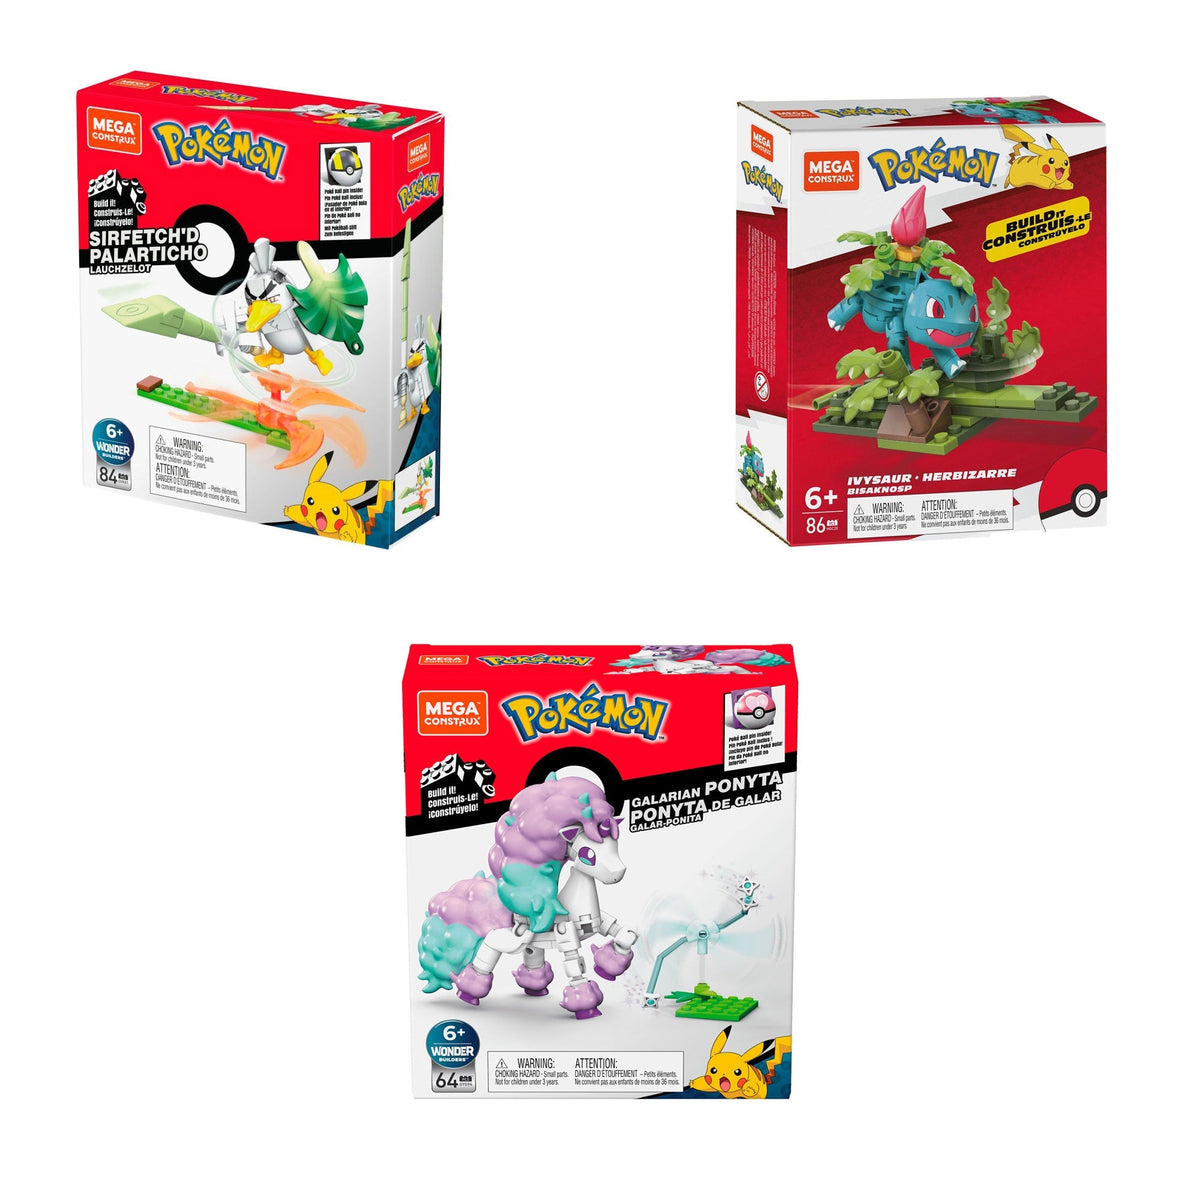 JOUET K.I.D. INC. Toys & Games Mega Construx™ Pokémon, Power Pack, Assortment, 1 Count 194735048083